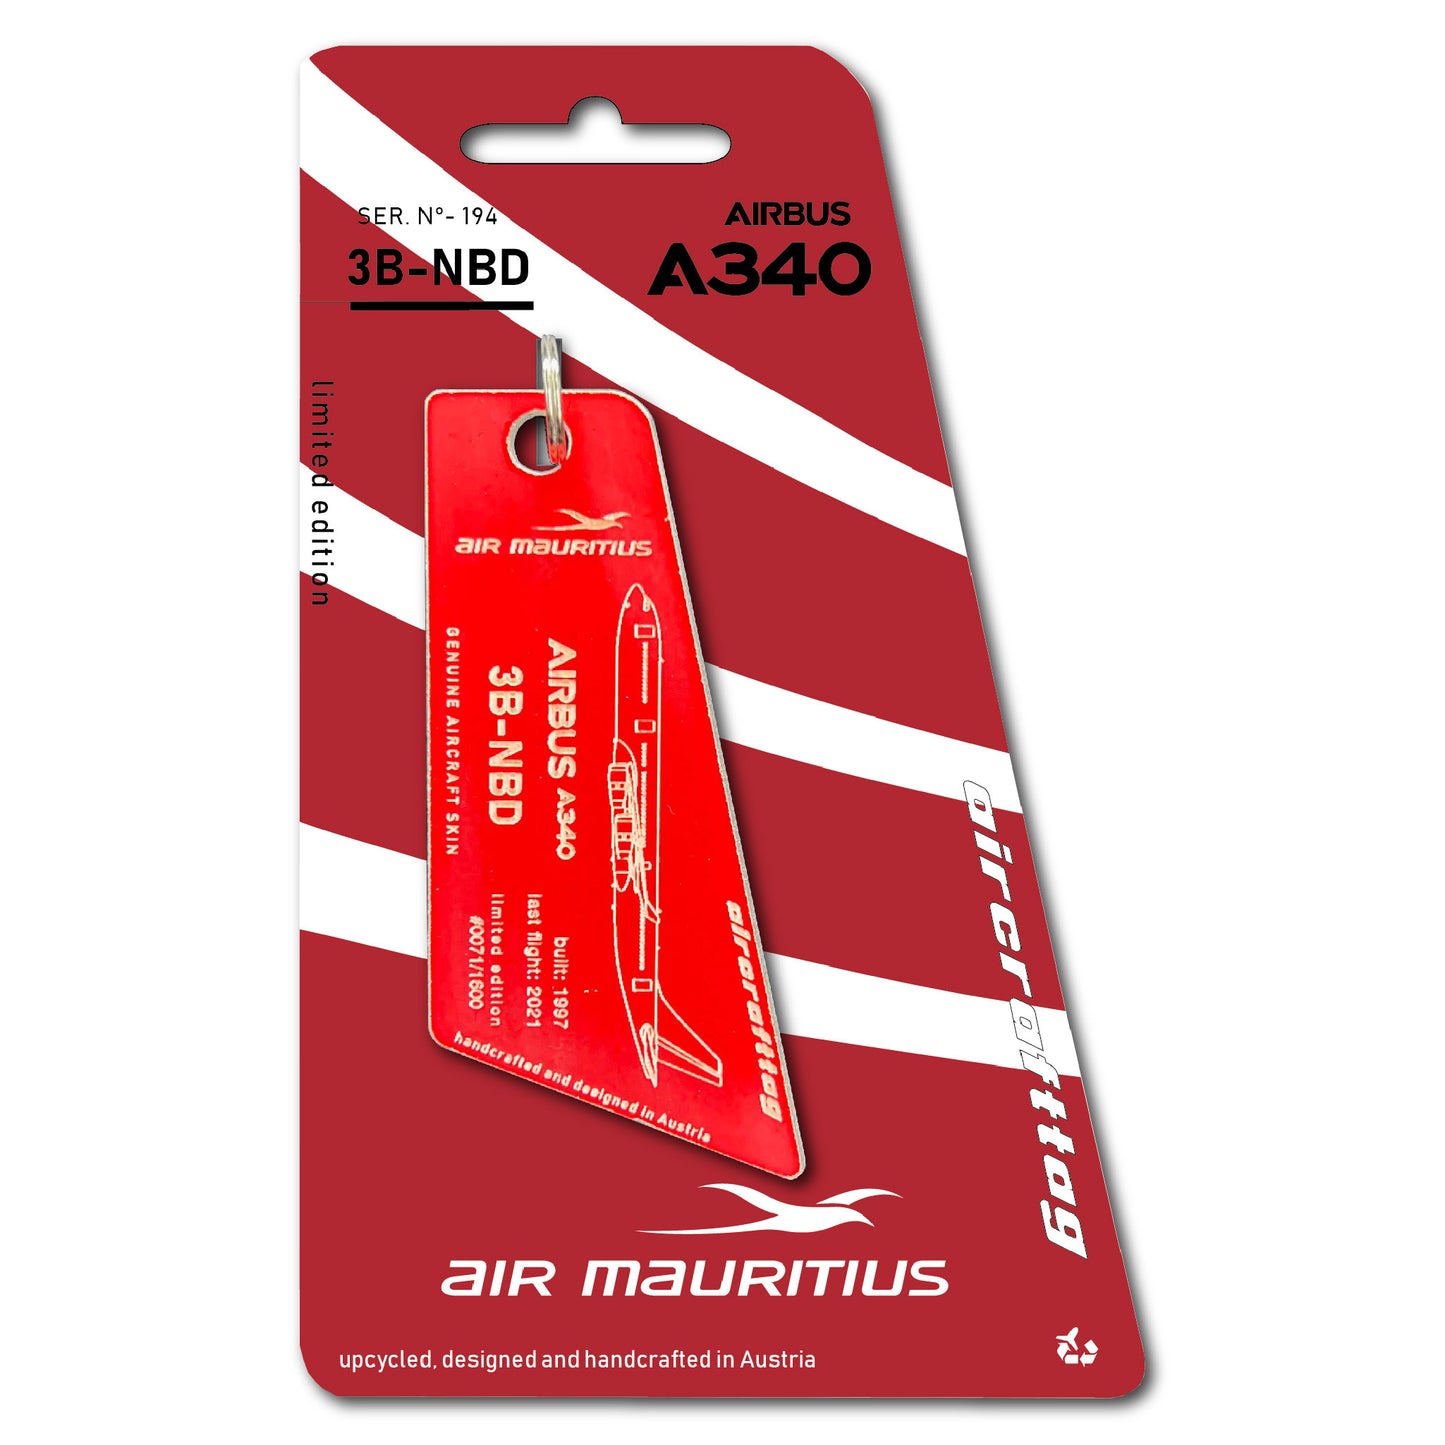 Airbus A340 - Air Mauritius - 3B-NBD - flag cut